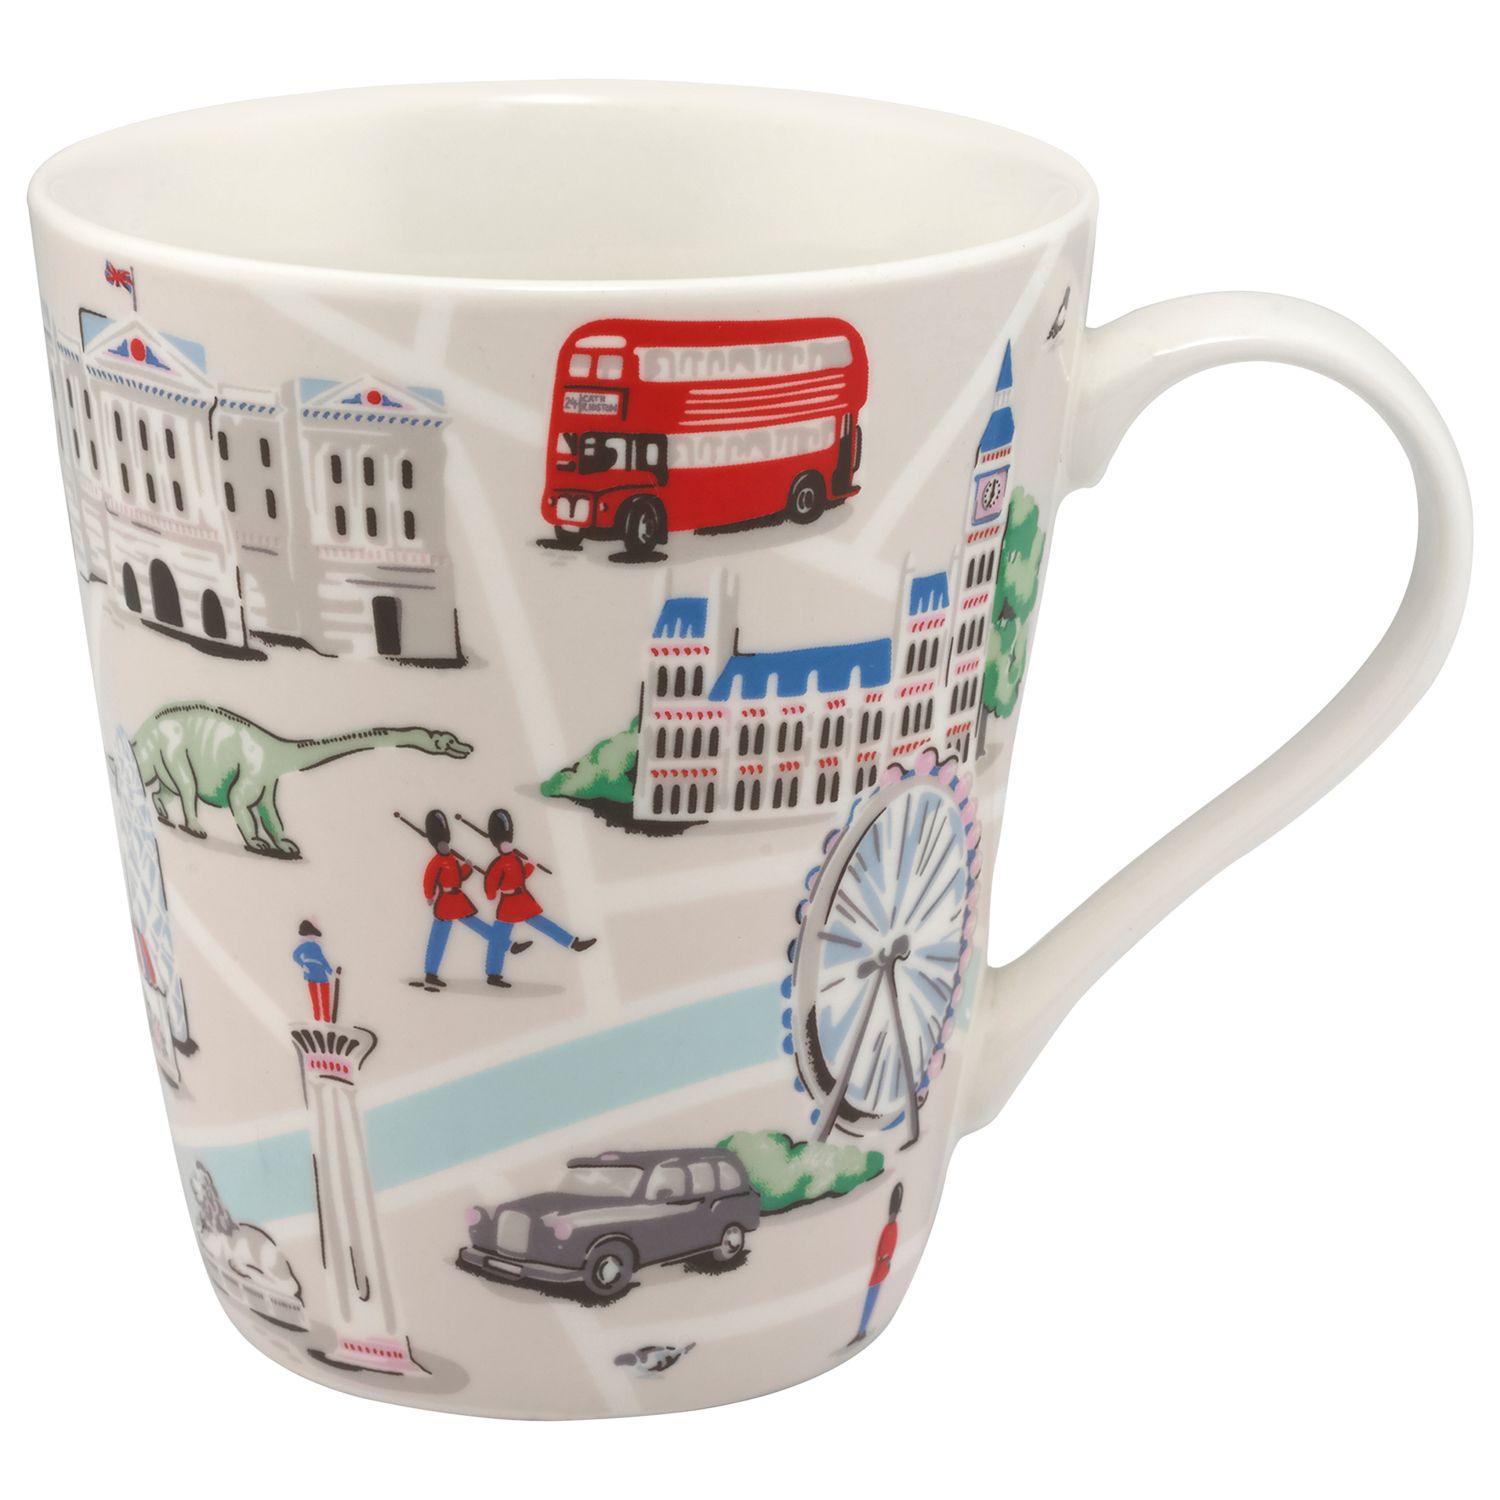 cath kidston london mug